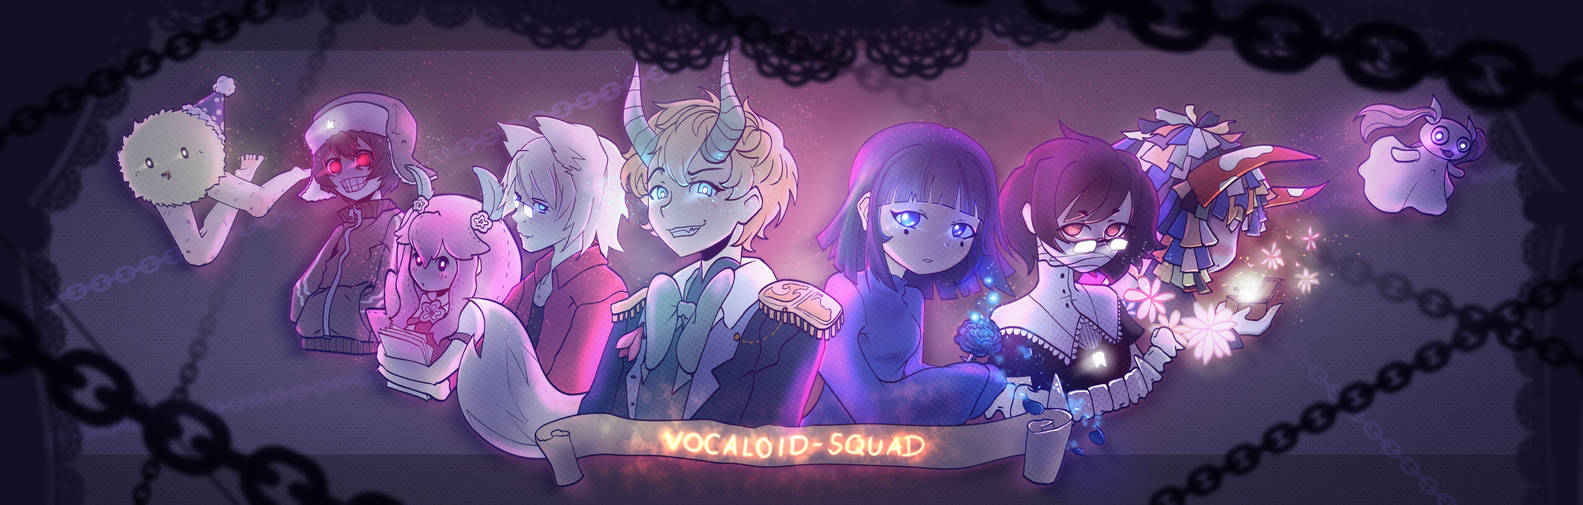 Vocaloid Squad [Fanart]